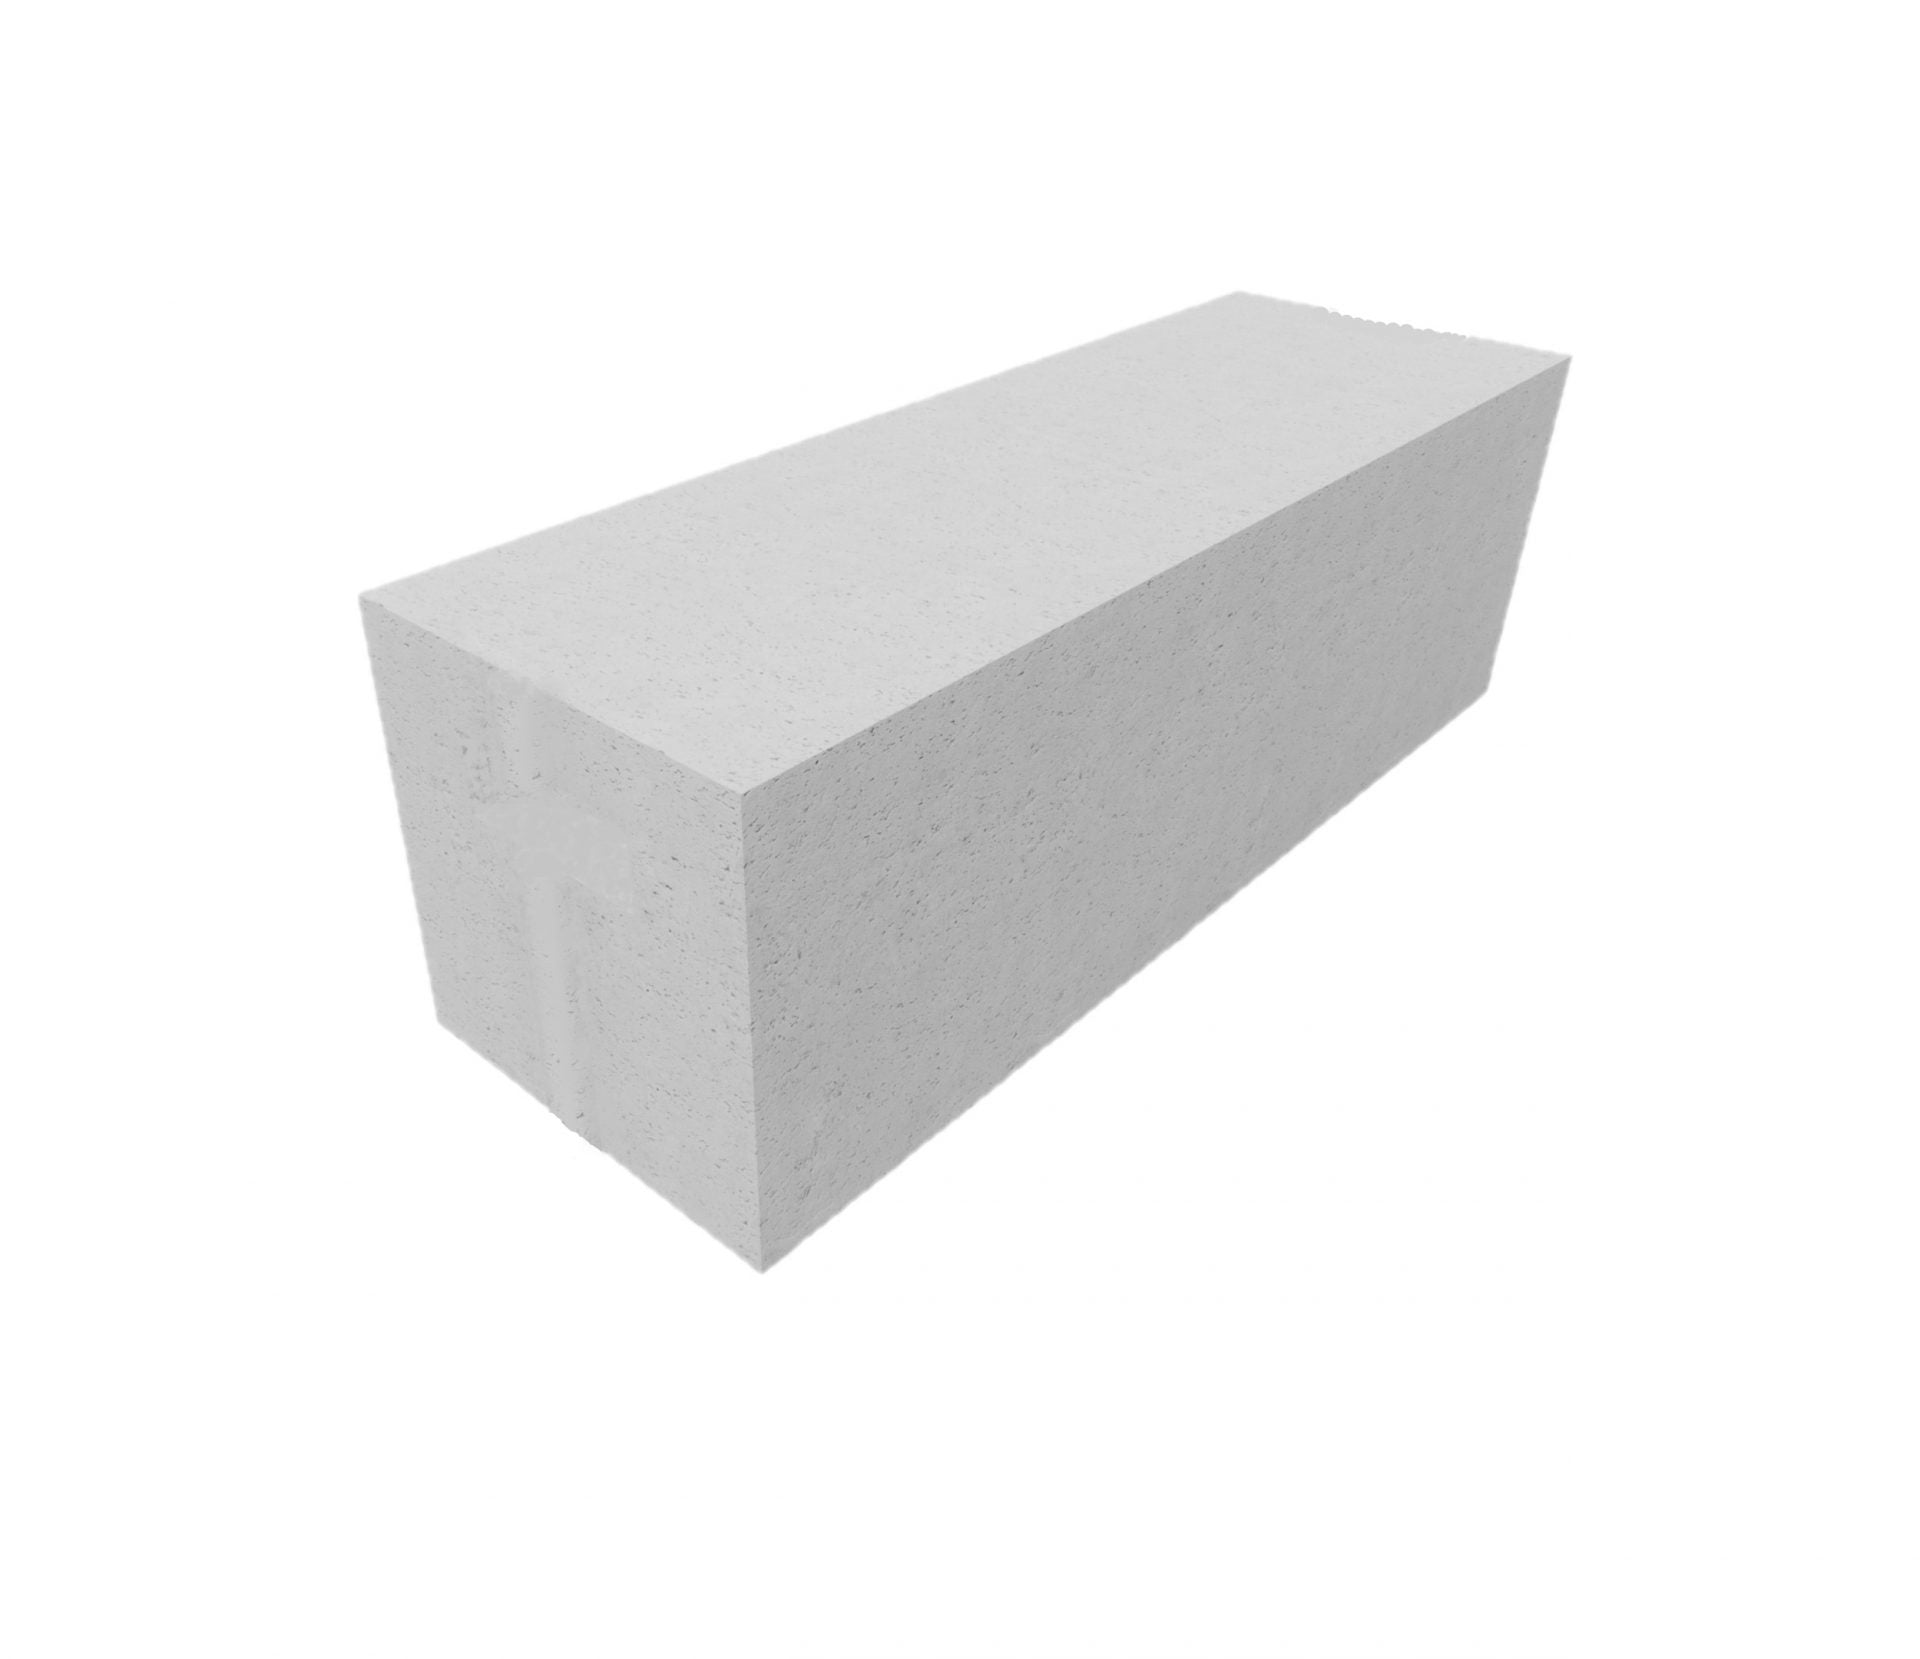 Aerated concrete block 200mm R-value 2.27 (per m2)